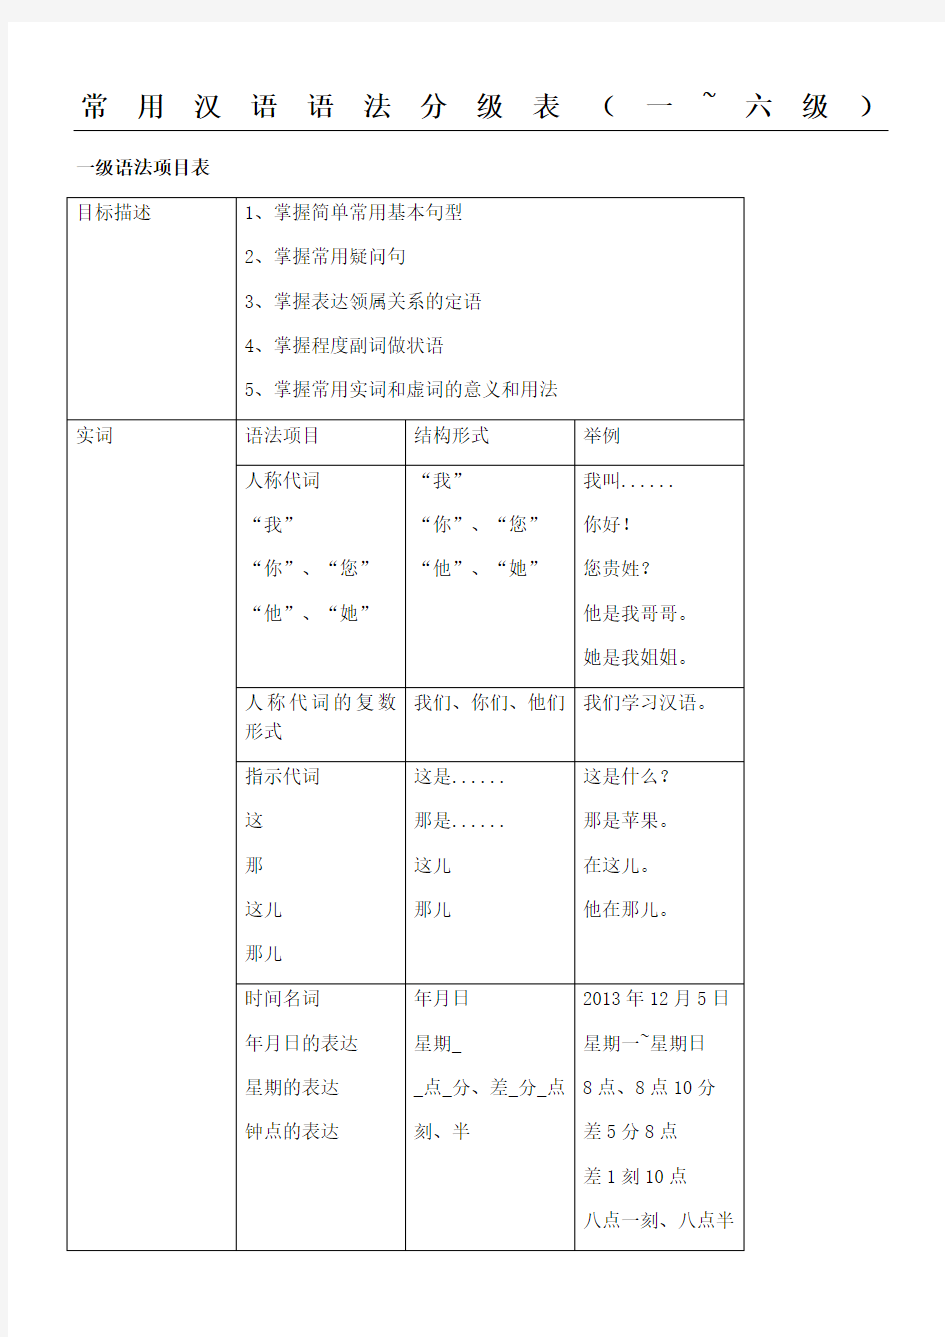 常用汉语语法分级表格模板版